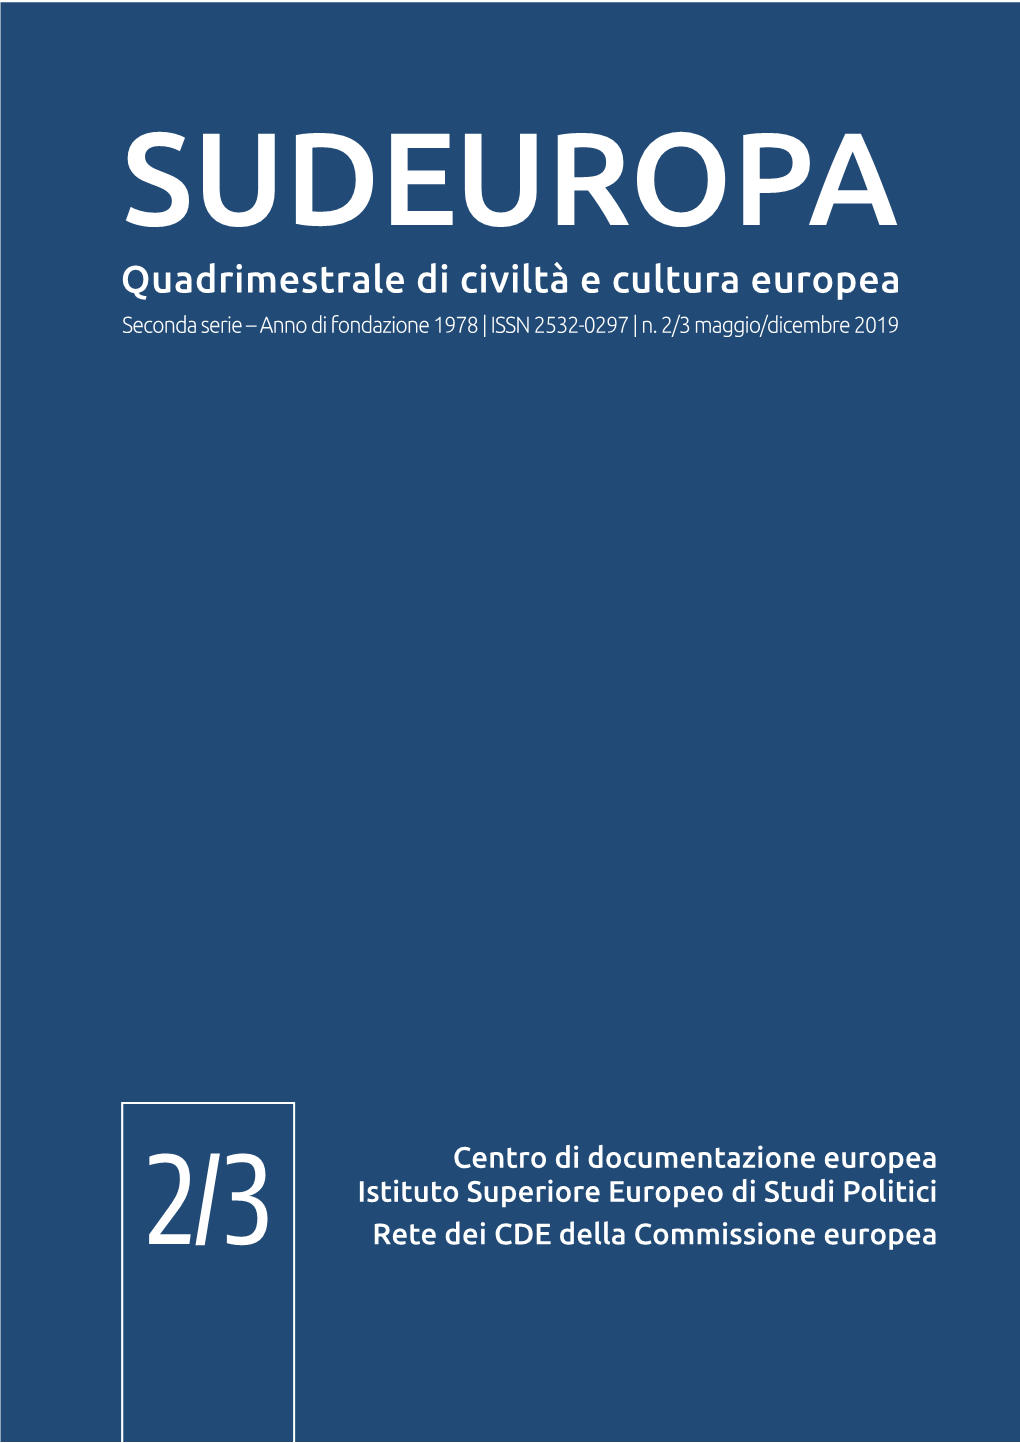 Quadrimestrale Di Civiltà E Cultura Europea Istituzionali Dell’Unione Europea, Di Cui Questa Rivista È Emanazione